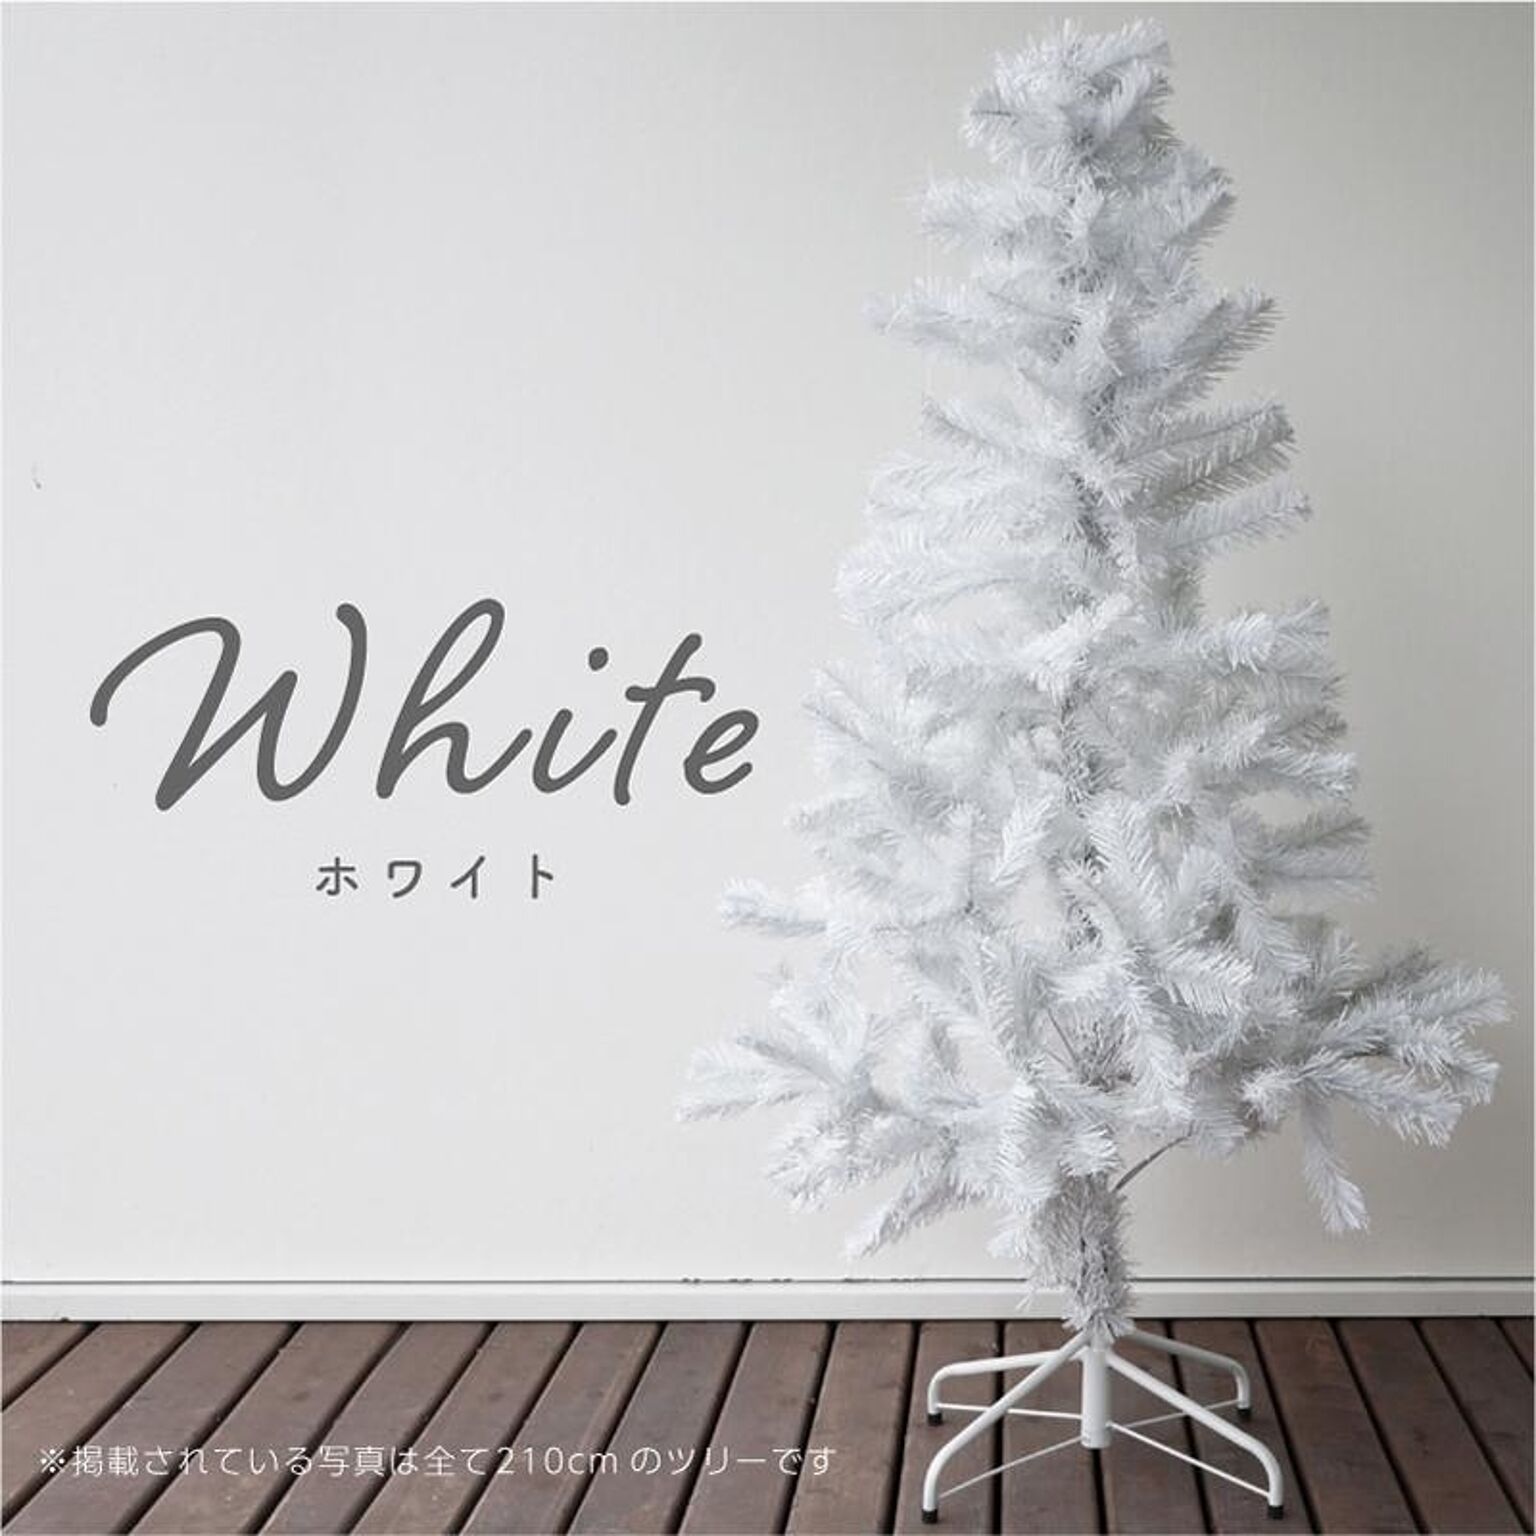 ホワイトクリスマスツリーのおすすめ商品とおしゃれな実例 ｜ RoomClip